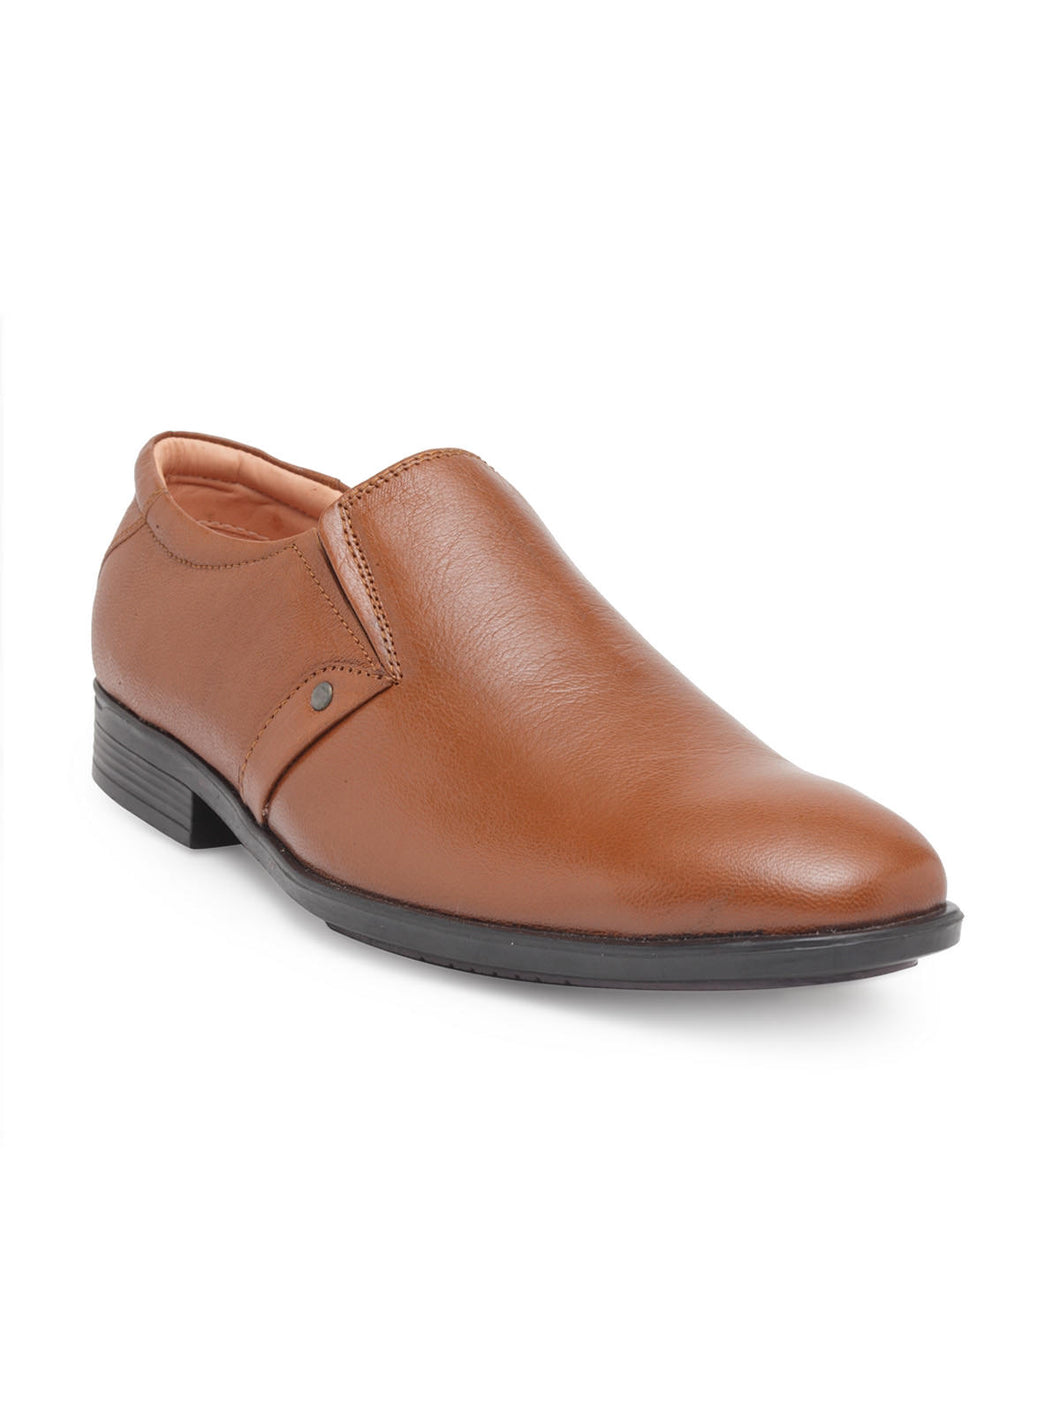 Teakwood Genuine Leather Tan Slip-On Shoes